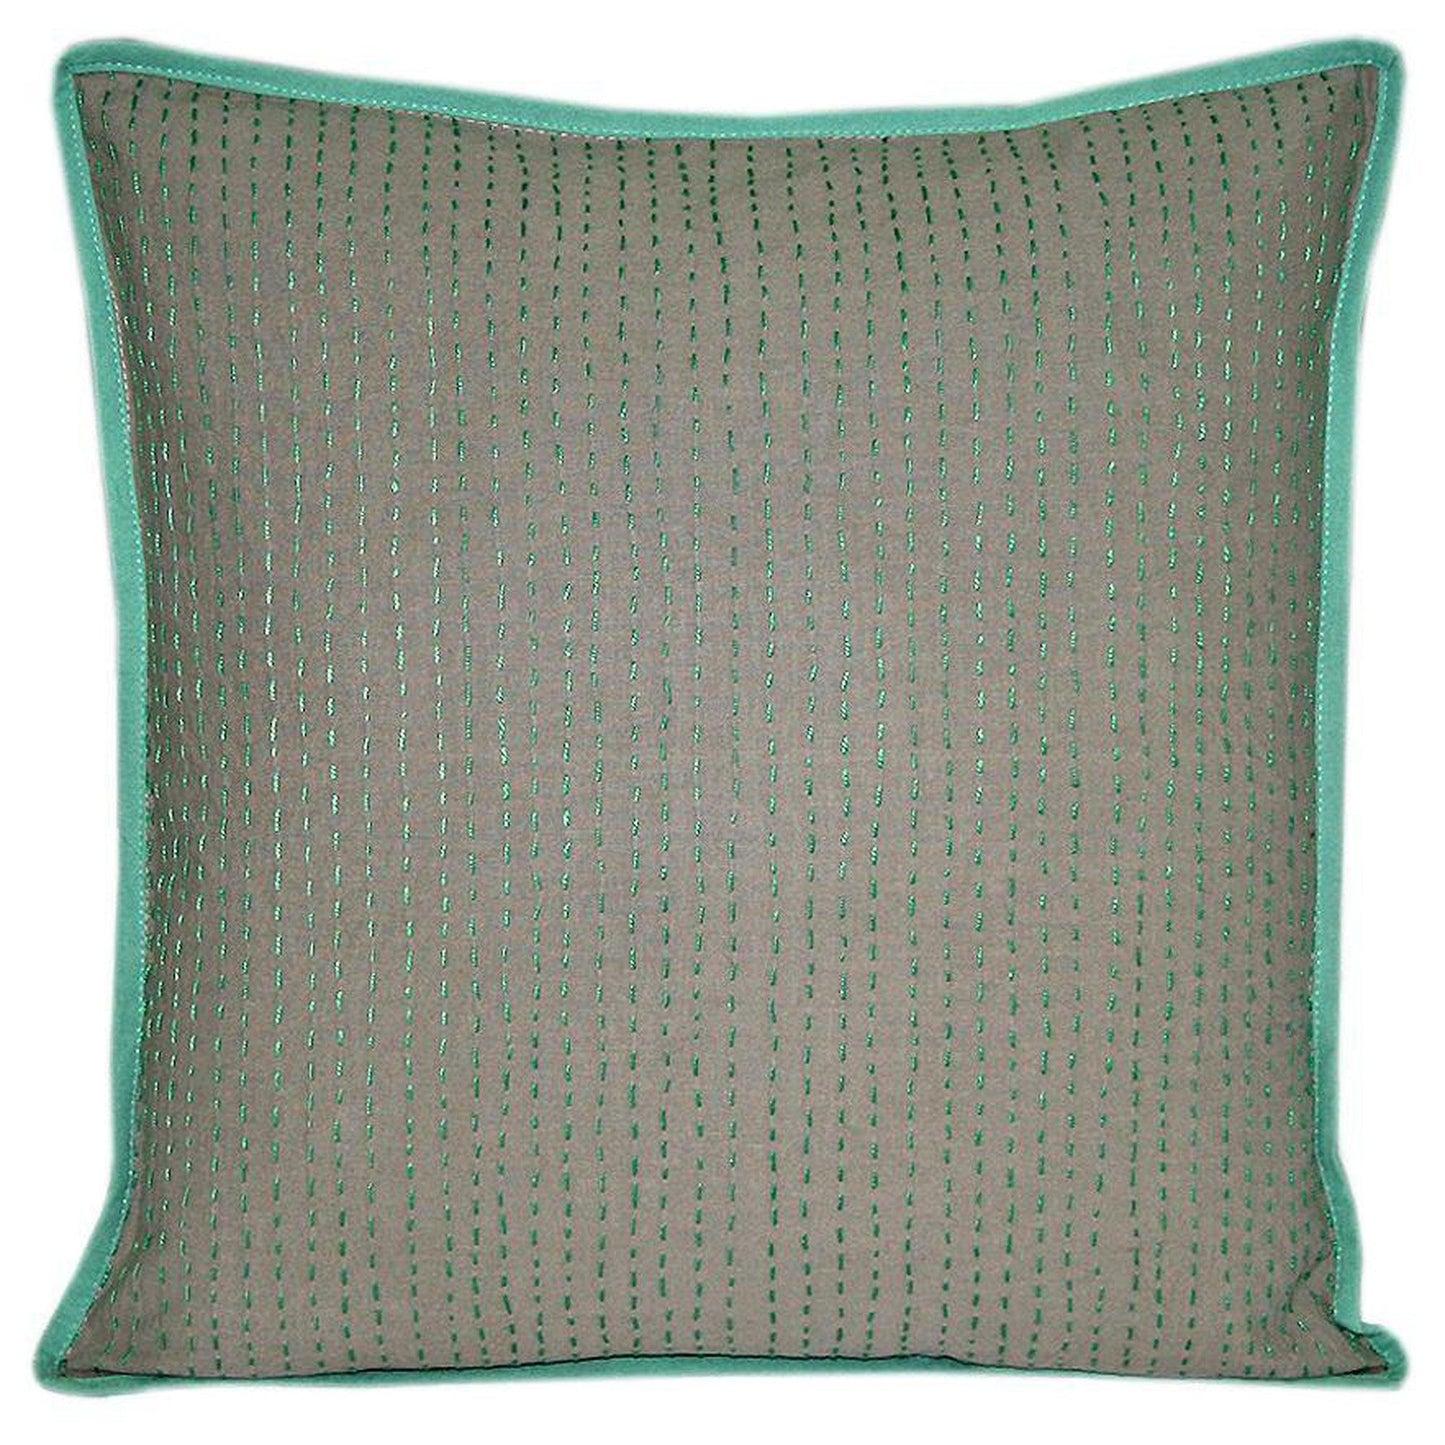 16" Sage Green Kantha Cushion Cover - The Teal Thread